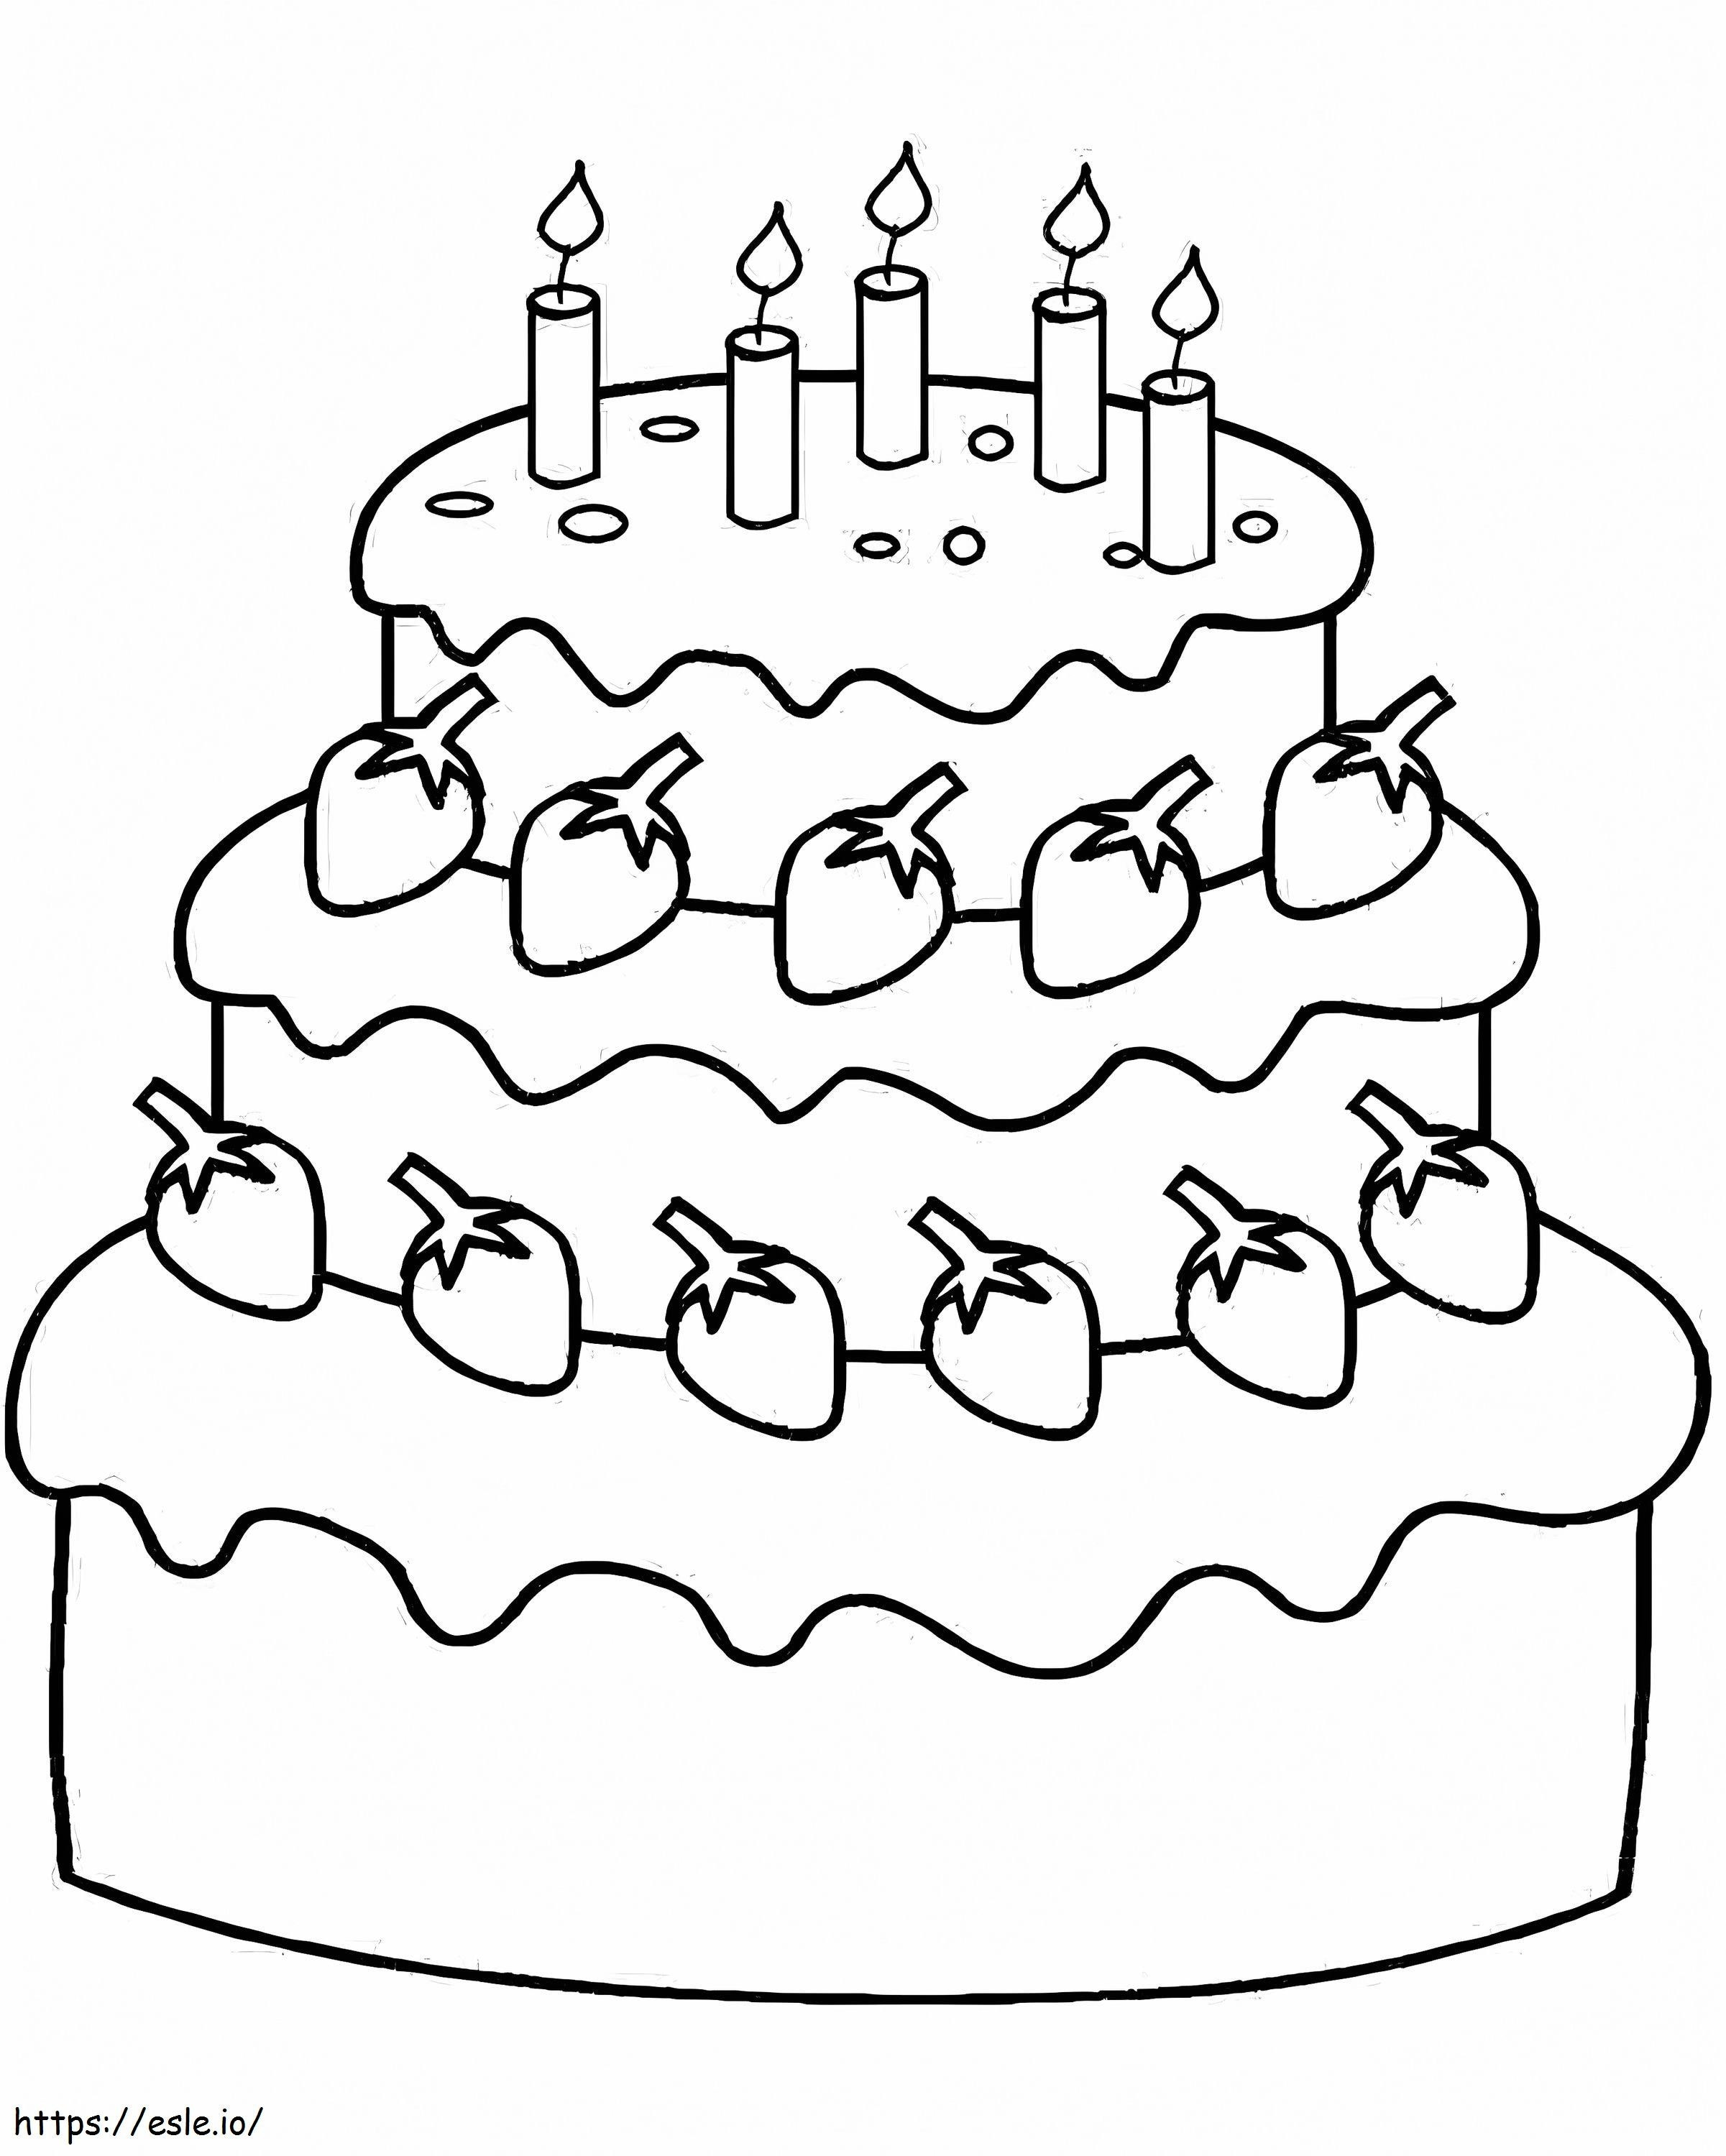  Darmowy tort urodzinowy Tort urodzinowy dla dzieci do wydrukowania za darmo Darmowe strony do kolorowania Urodziny kolorowanka